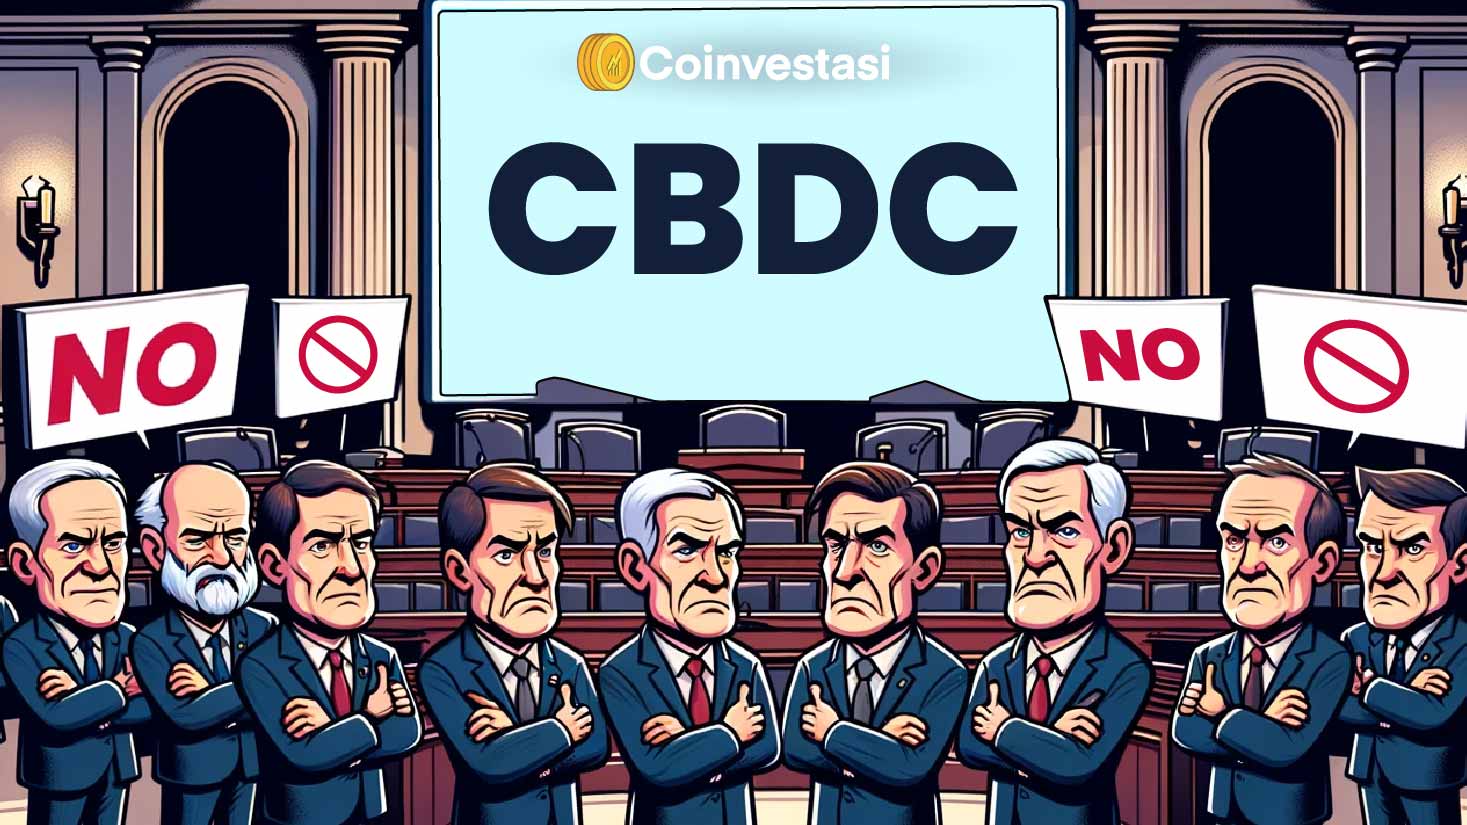 CBDC Dolar Digital